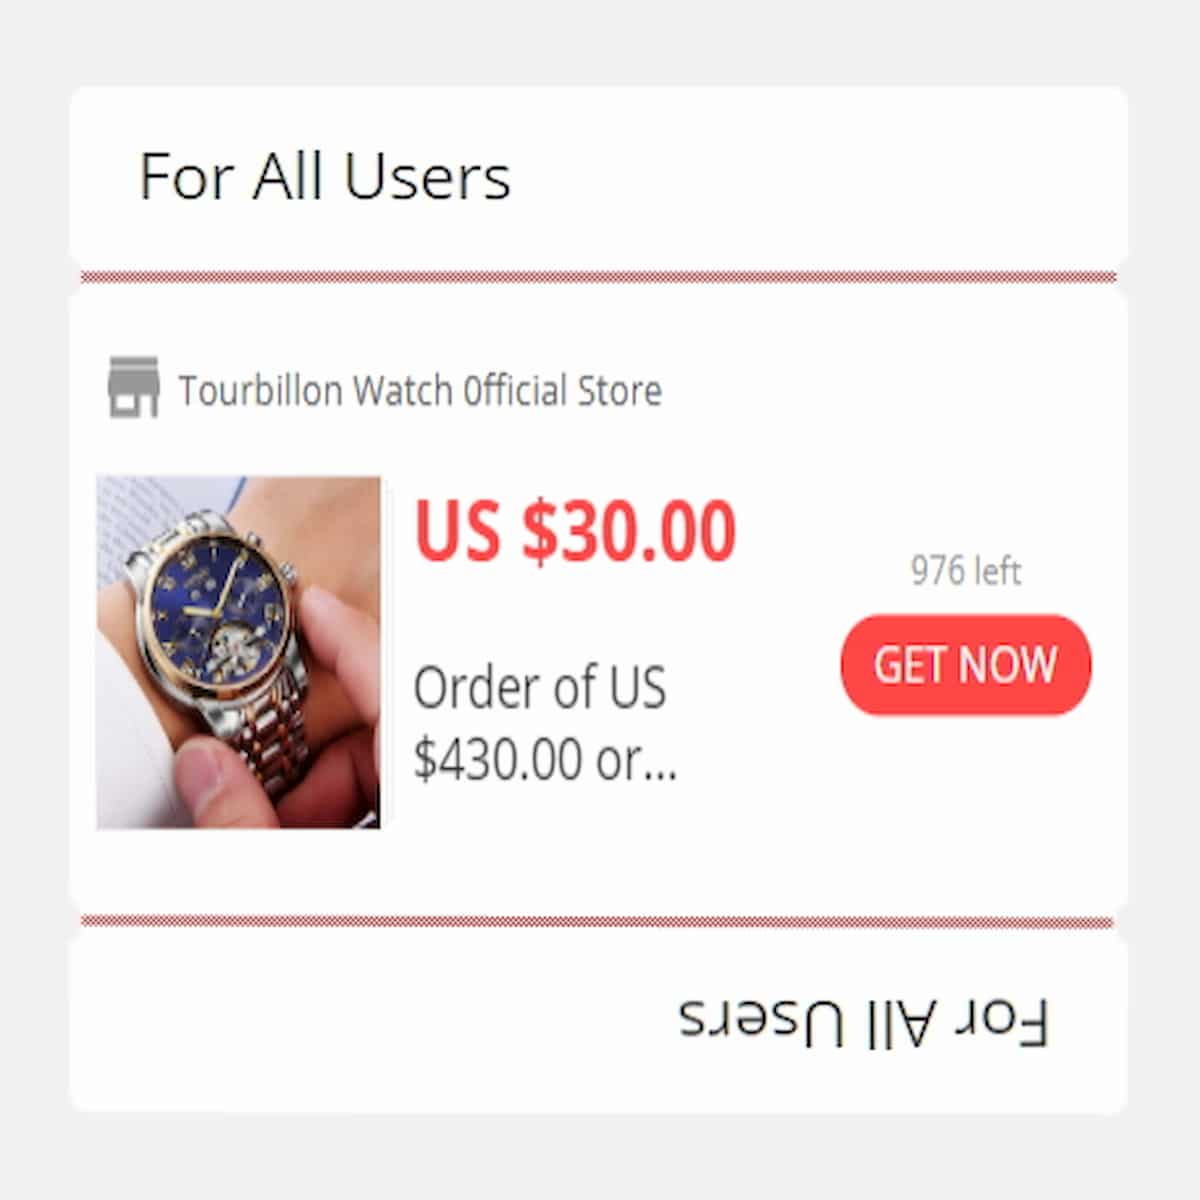 Tourbillon Watch 0fficial Store